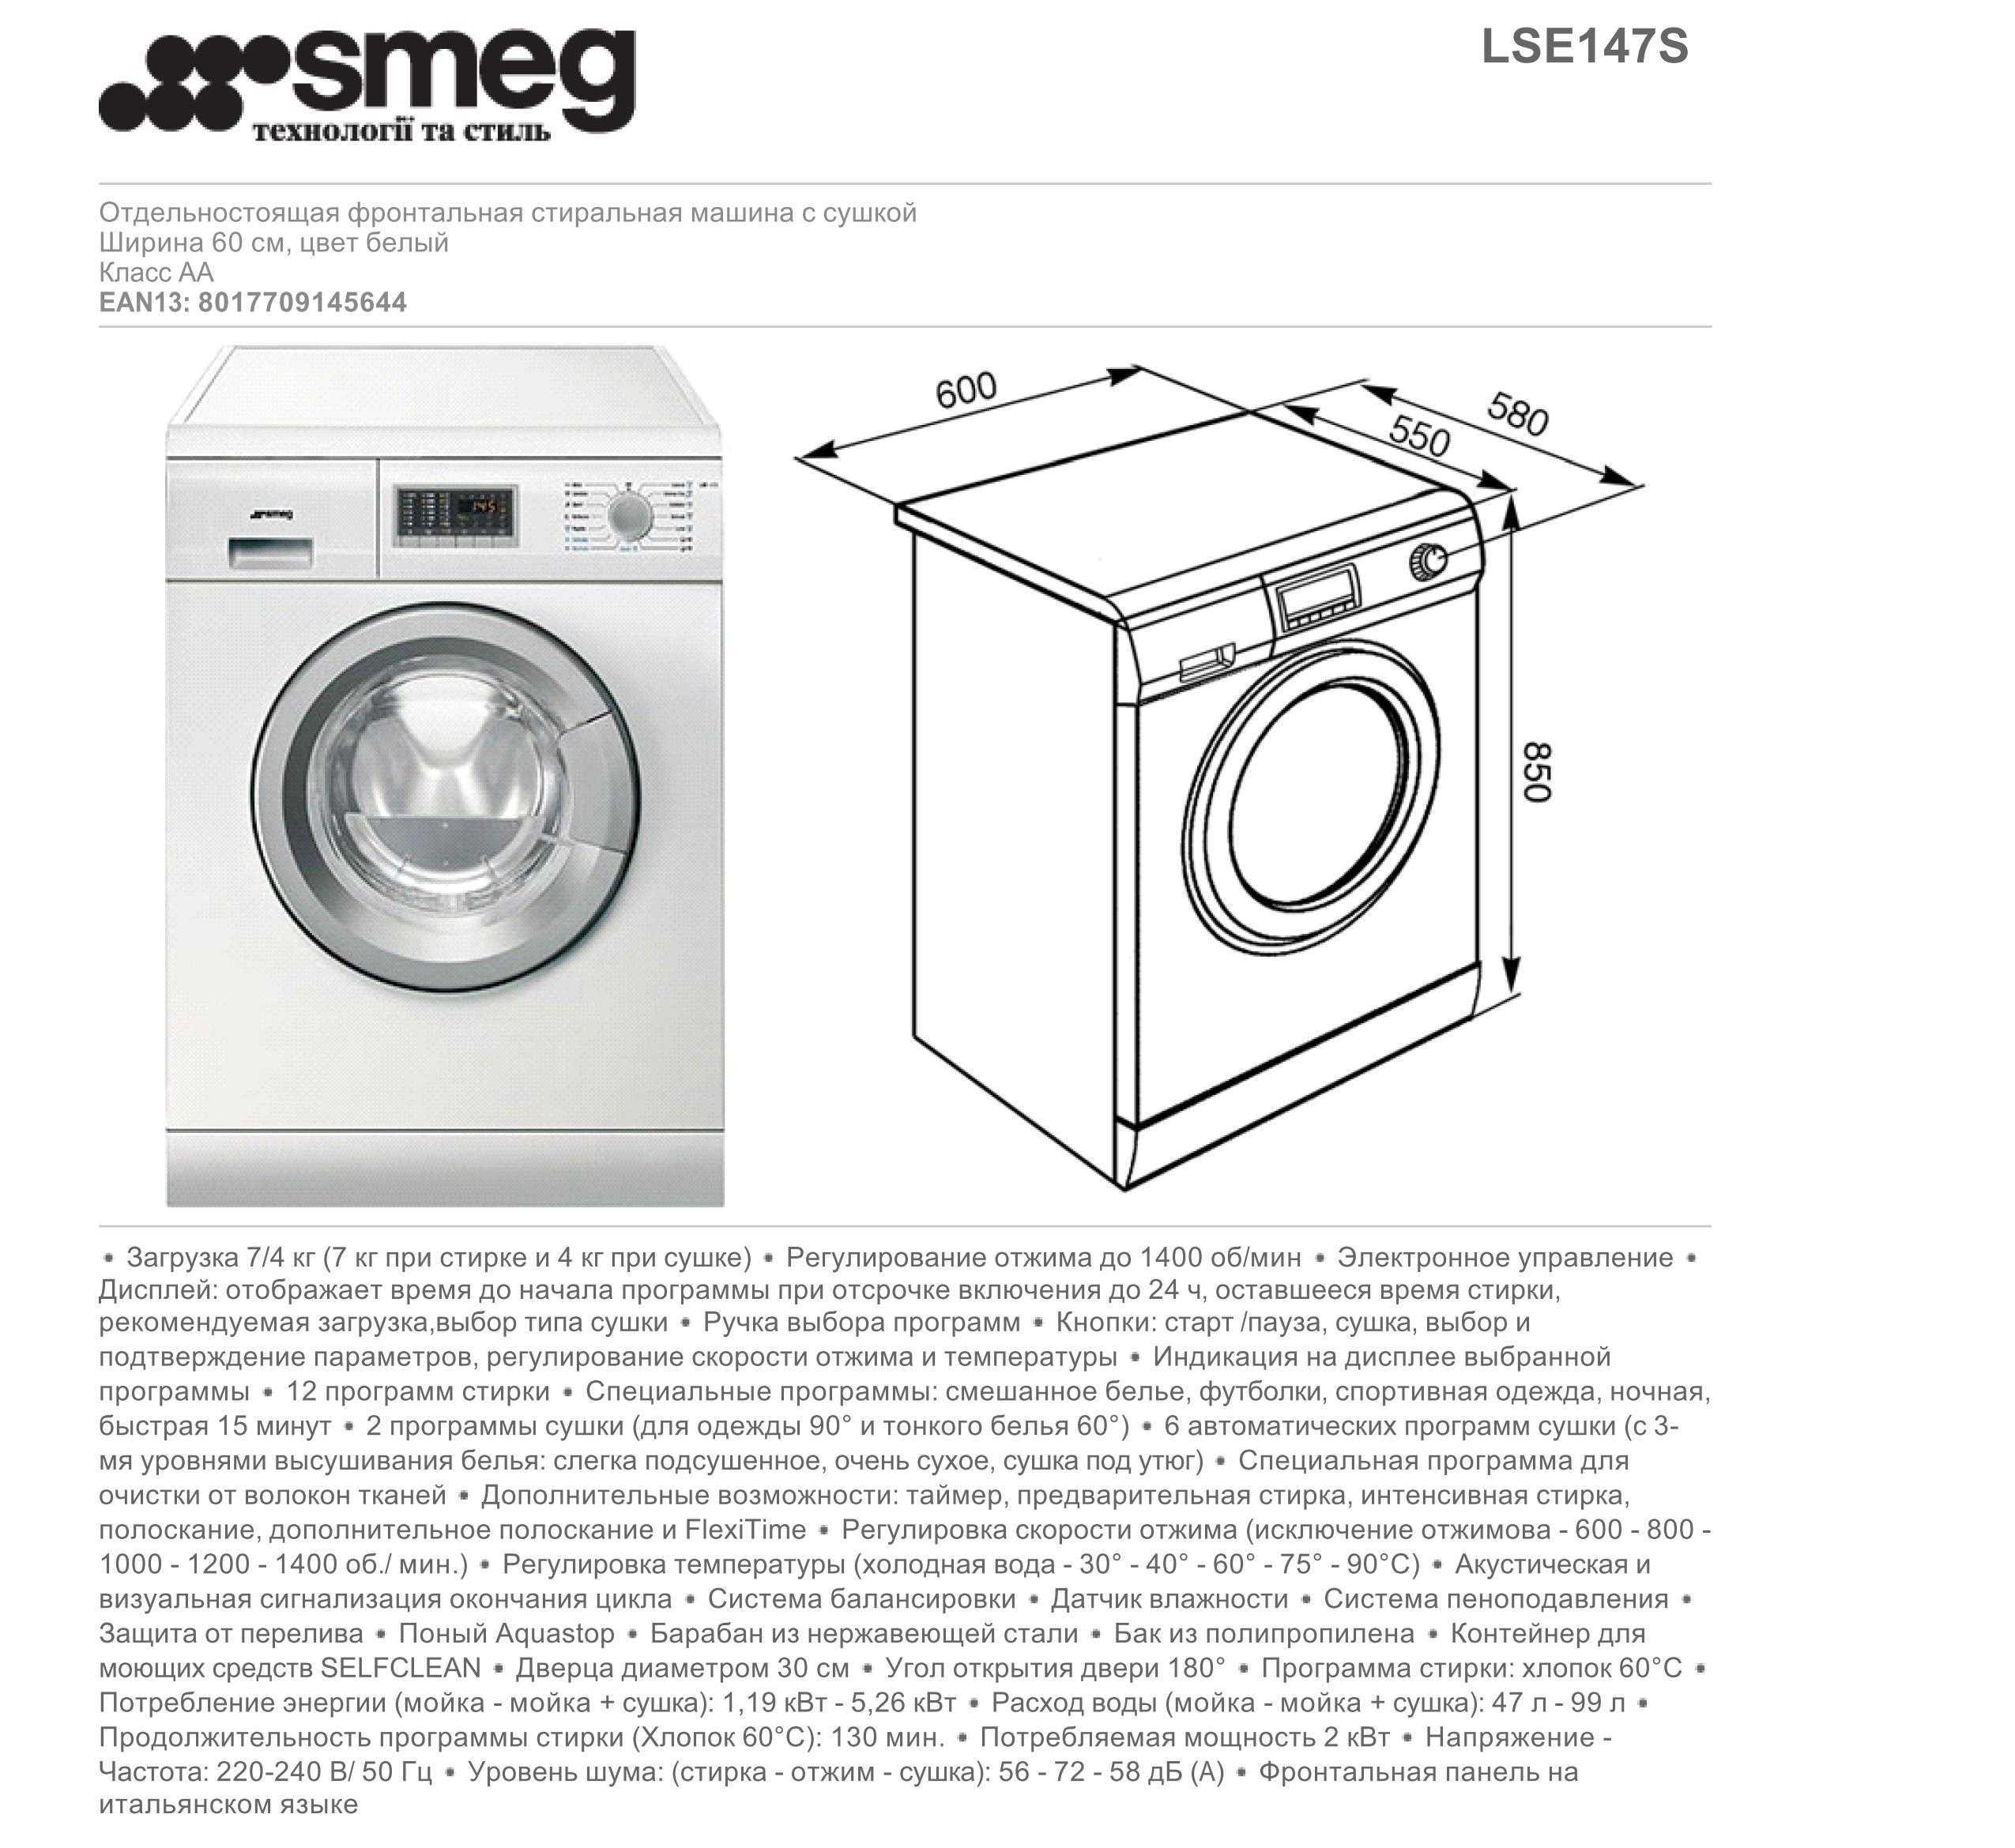 Топ-12 лучших стиральных машин lg: рейтинг 2020-2021 года и обзор популярных моделей по отзывам покупателей